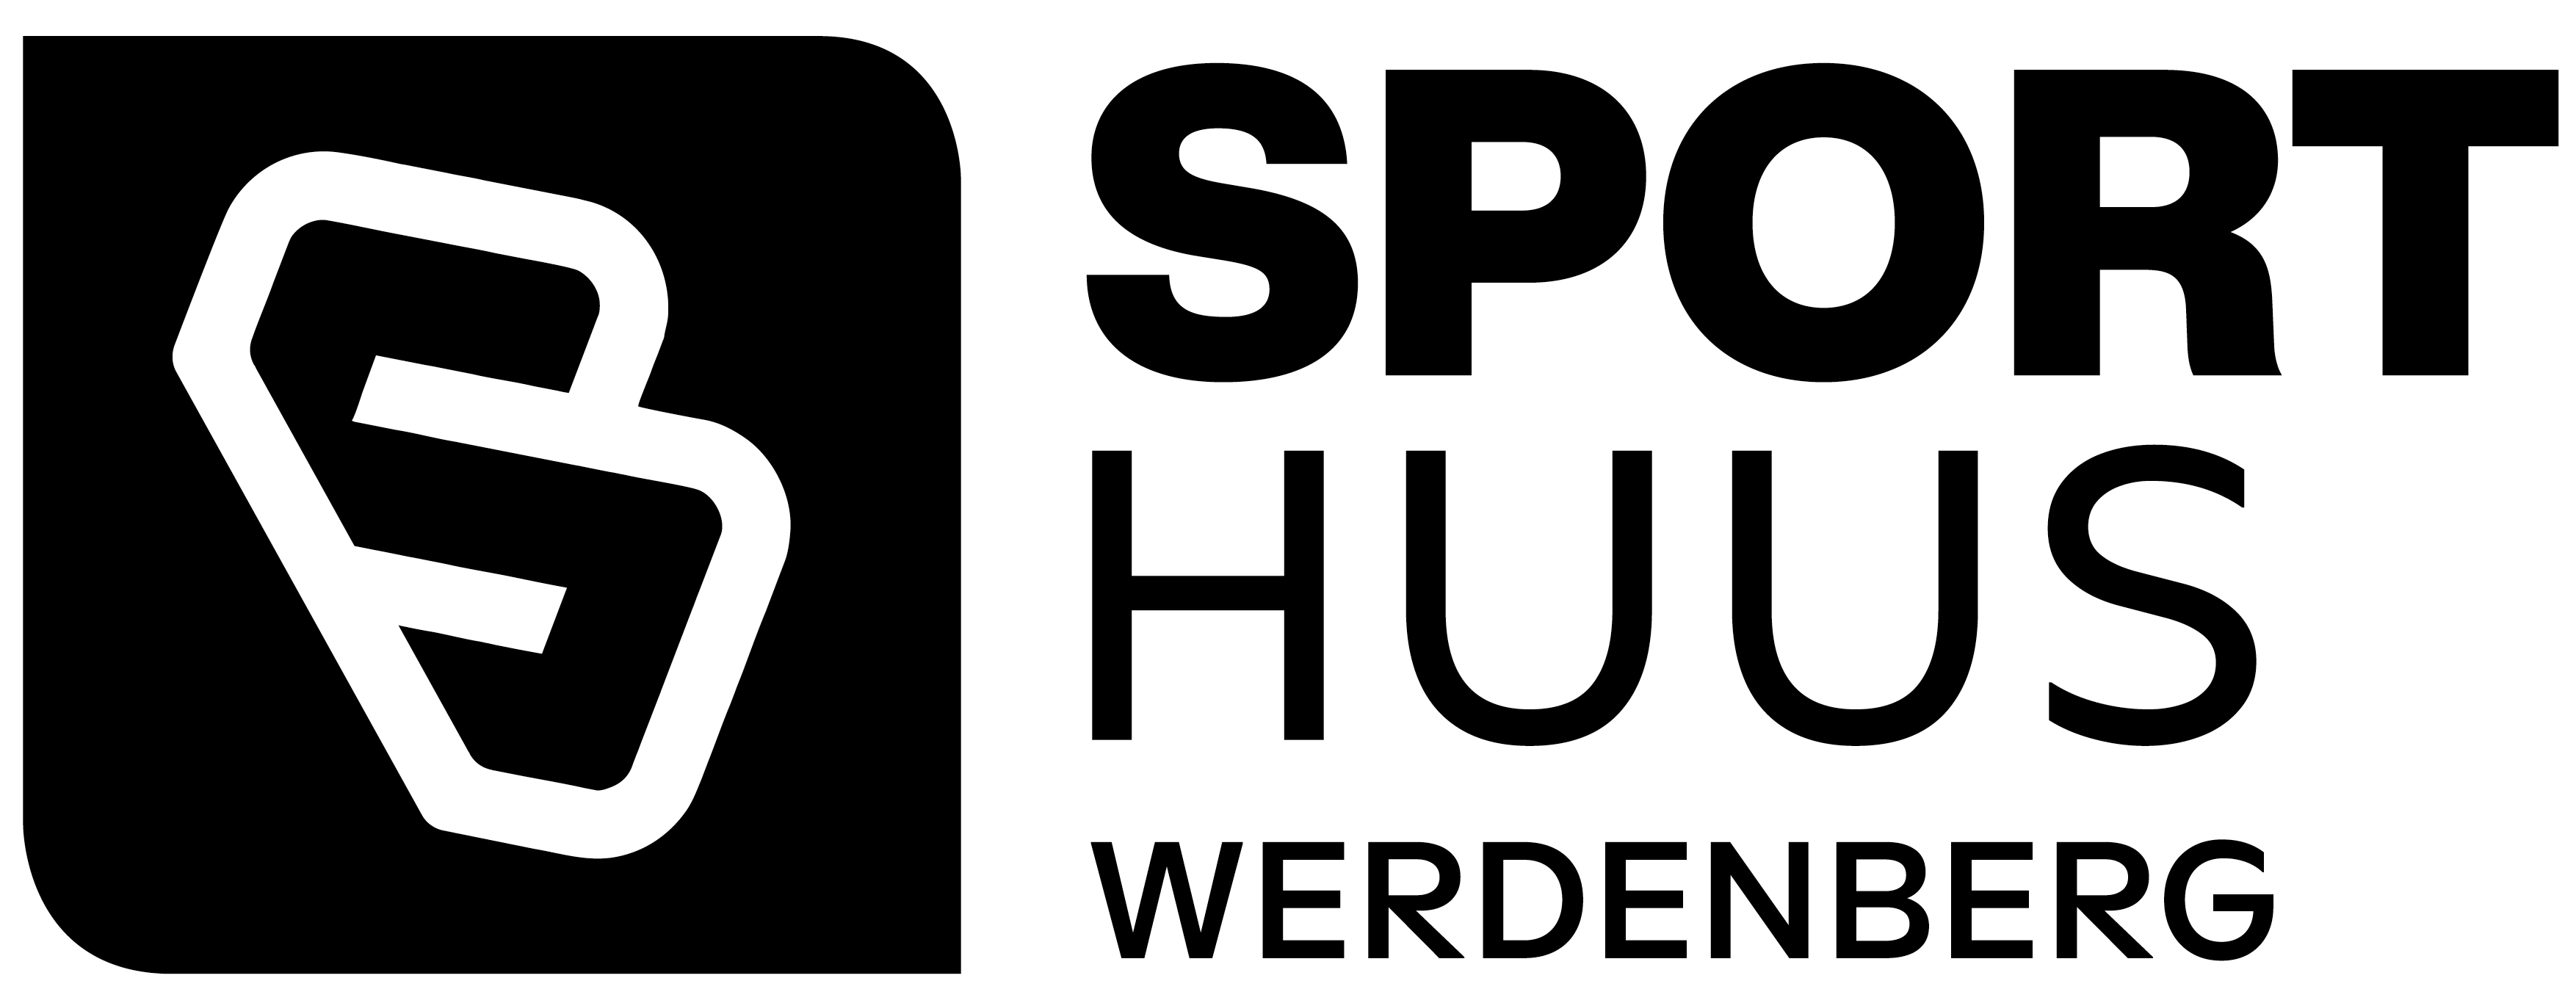 Judoclub Buchs Logo 2